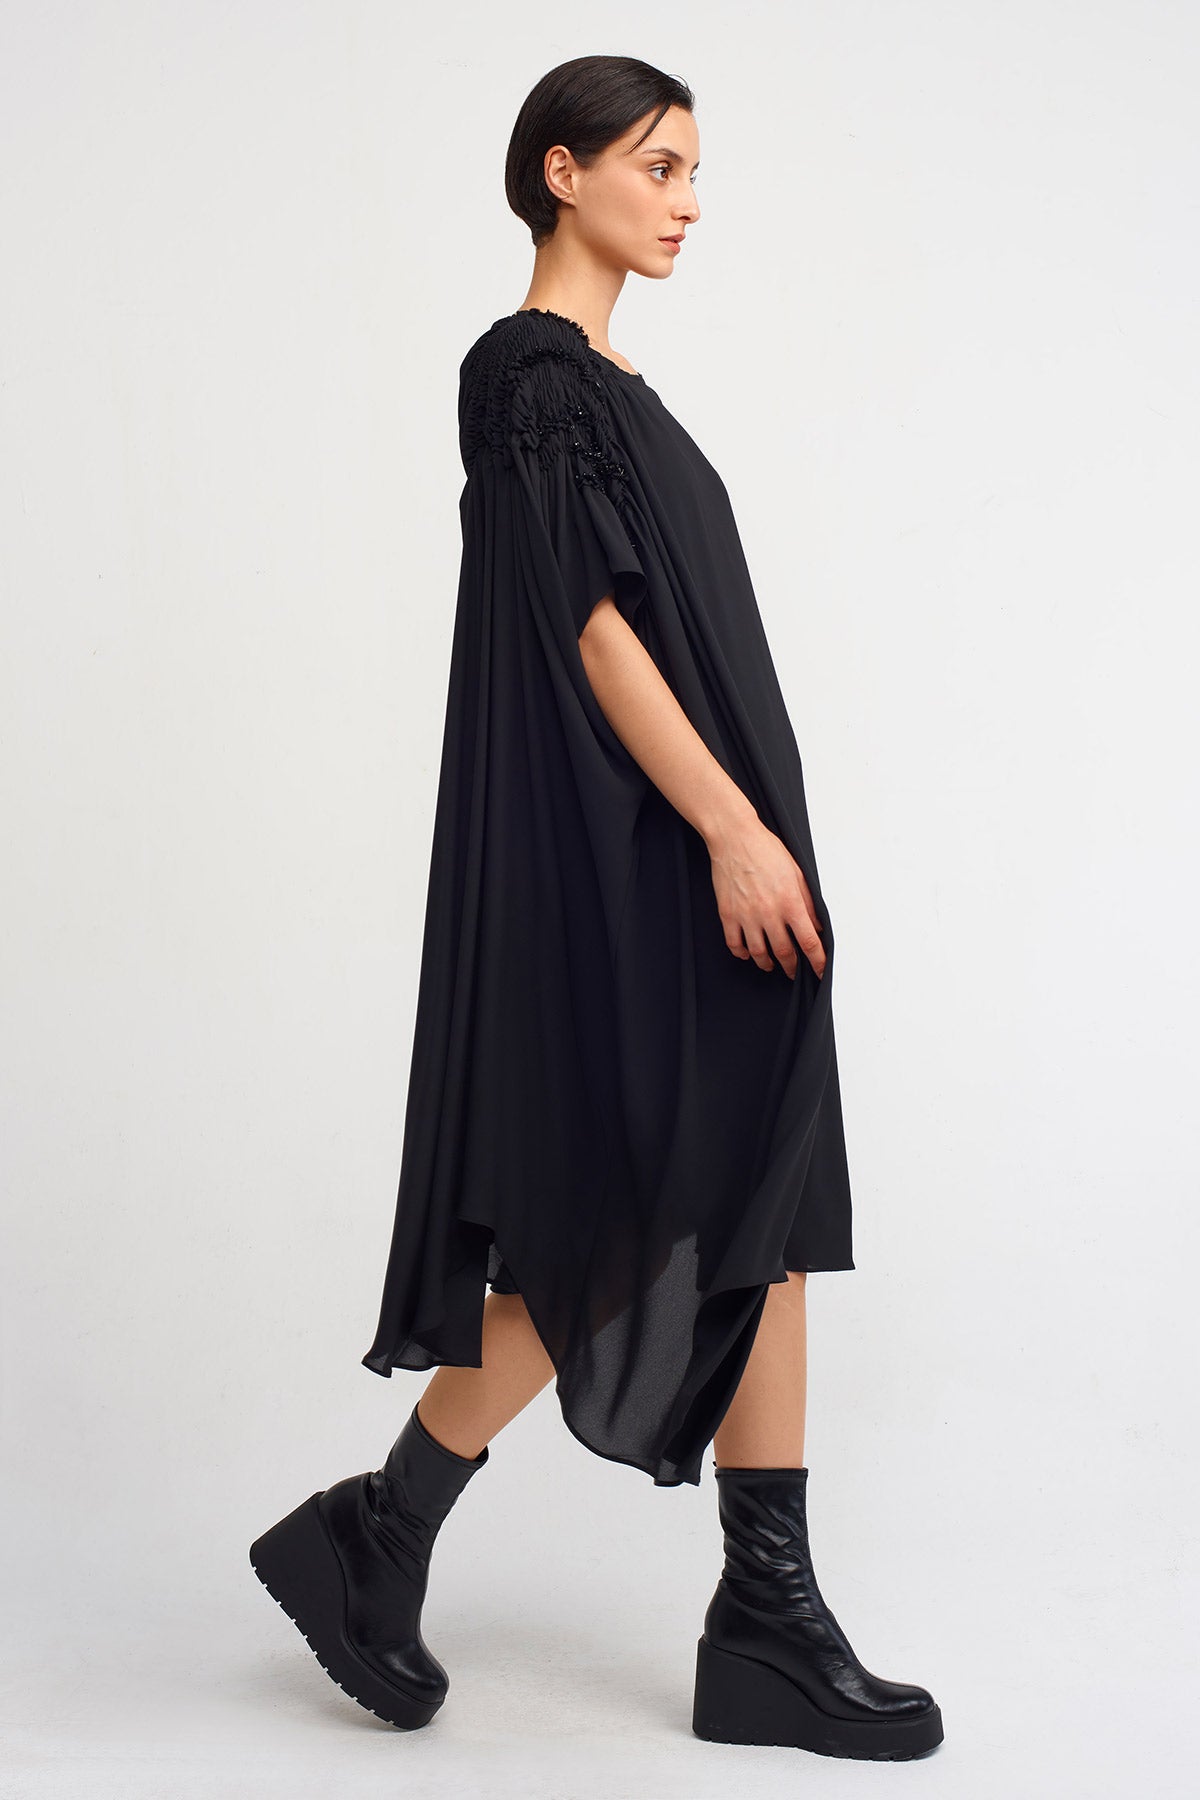 Black Elastic Gathered Sleeve Stylish Dress-K234014120